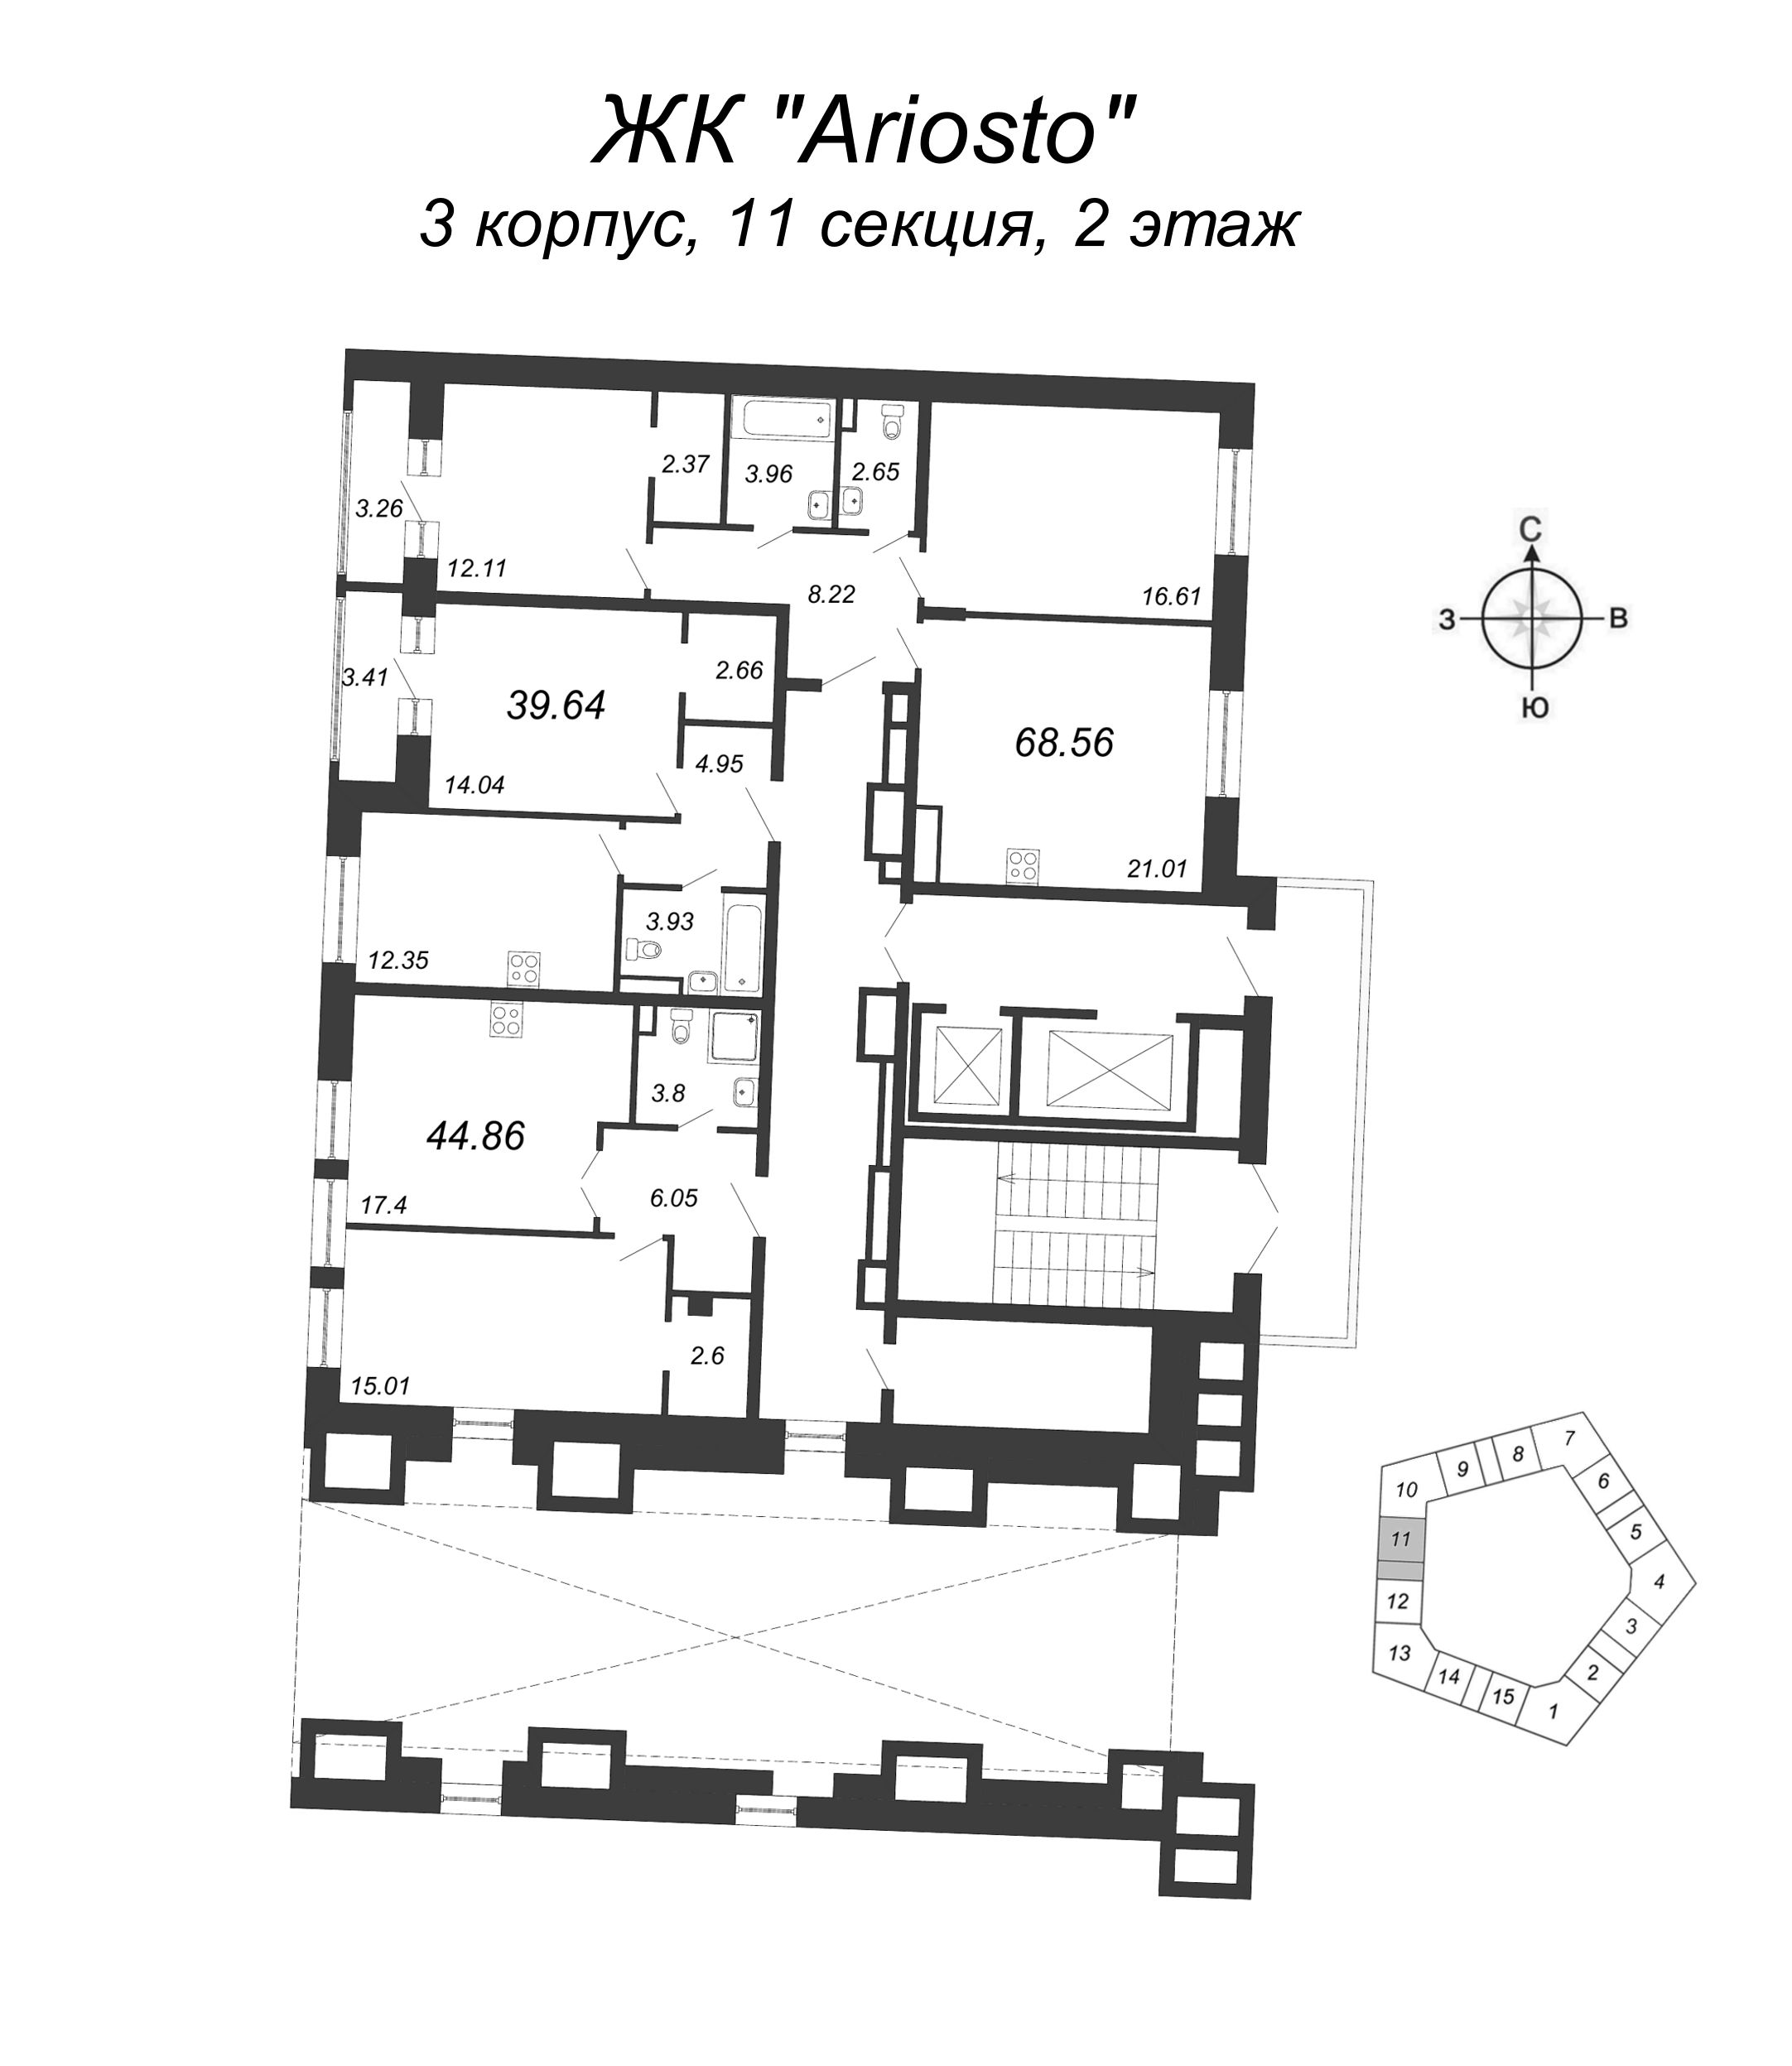 3-комнатная (Евро) квартира, 68.56 м² в ЖК "Ariosto" - планировка этажа